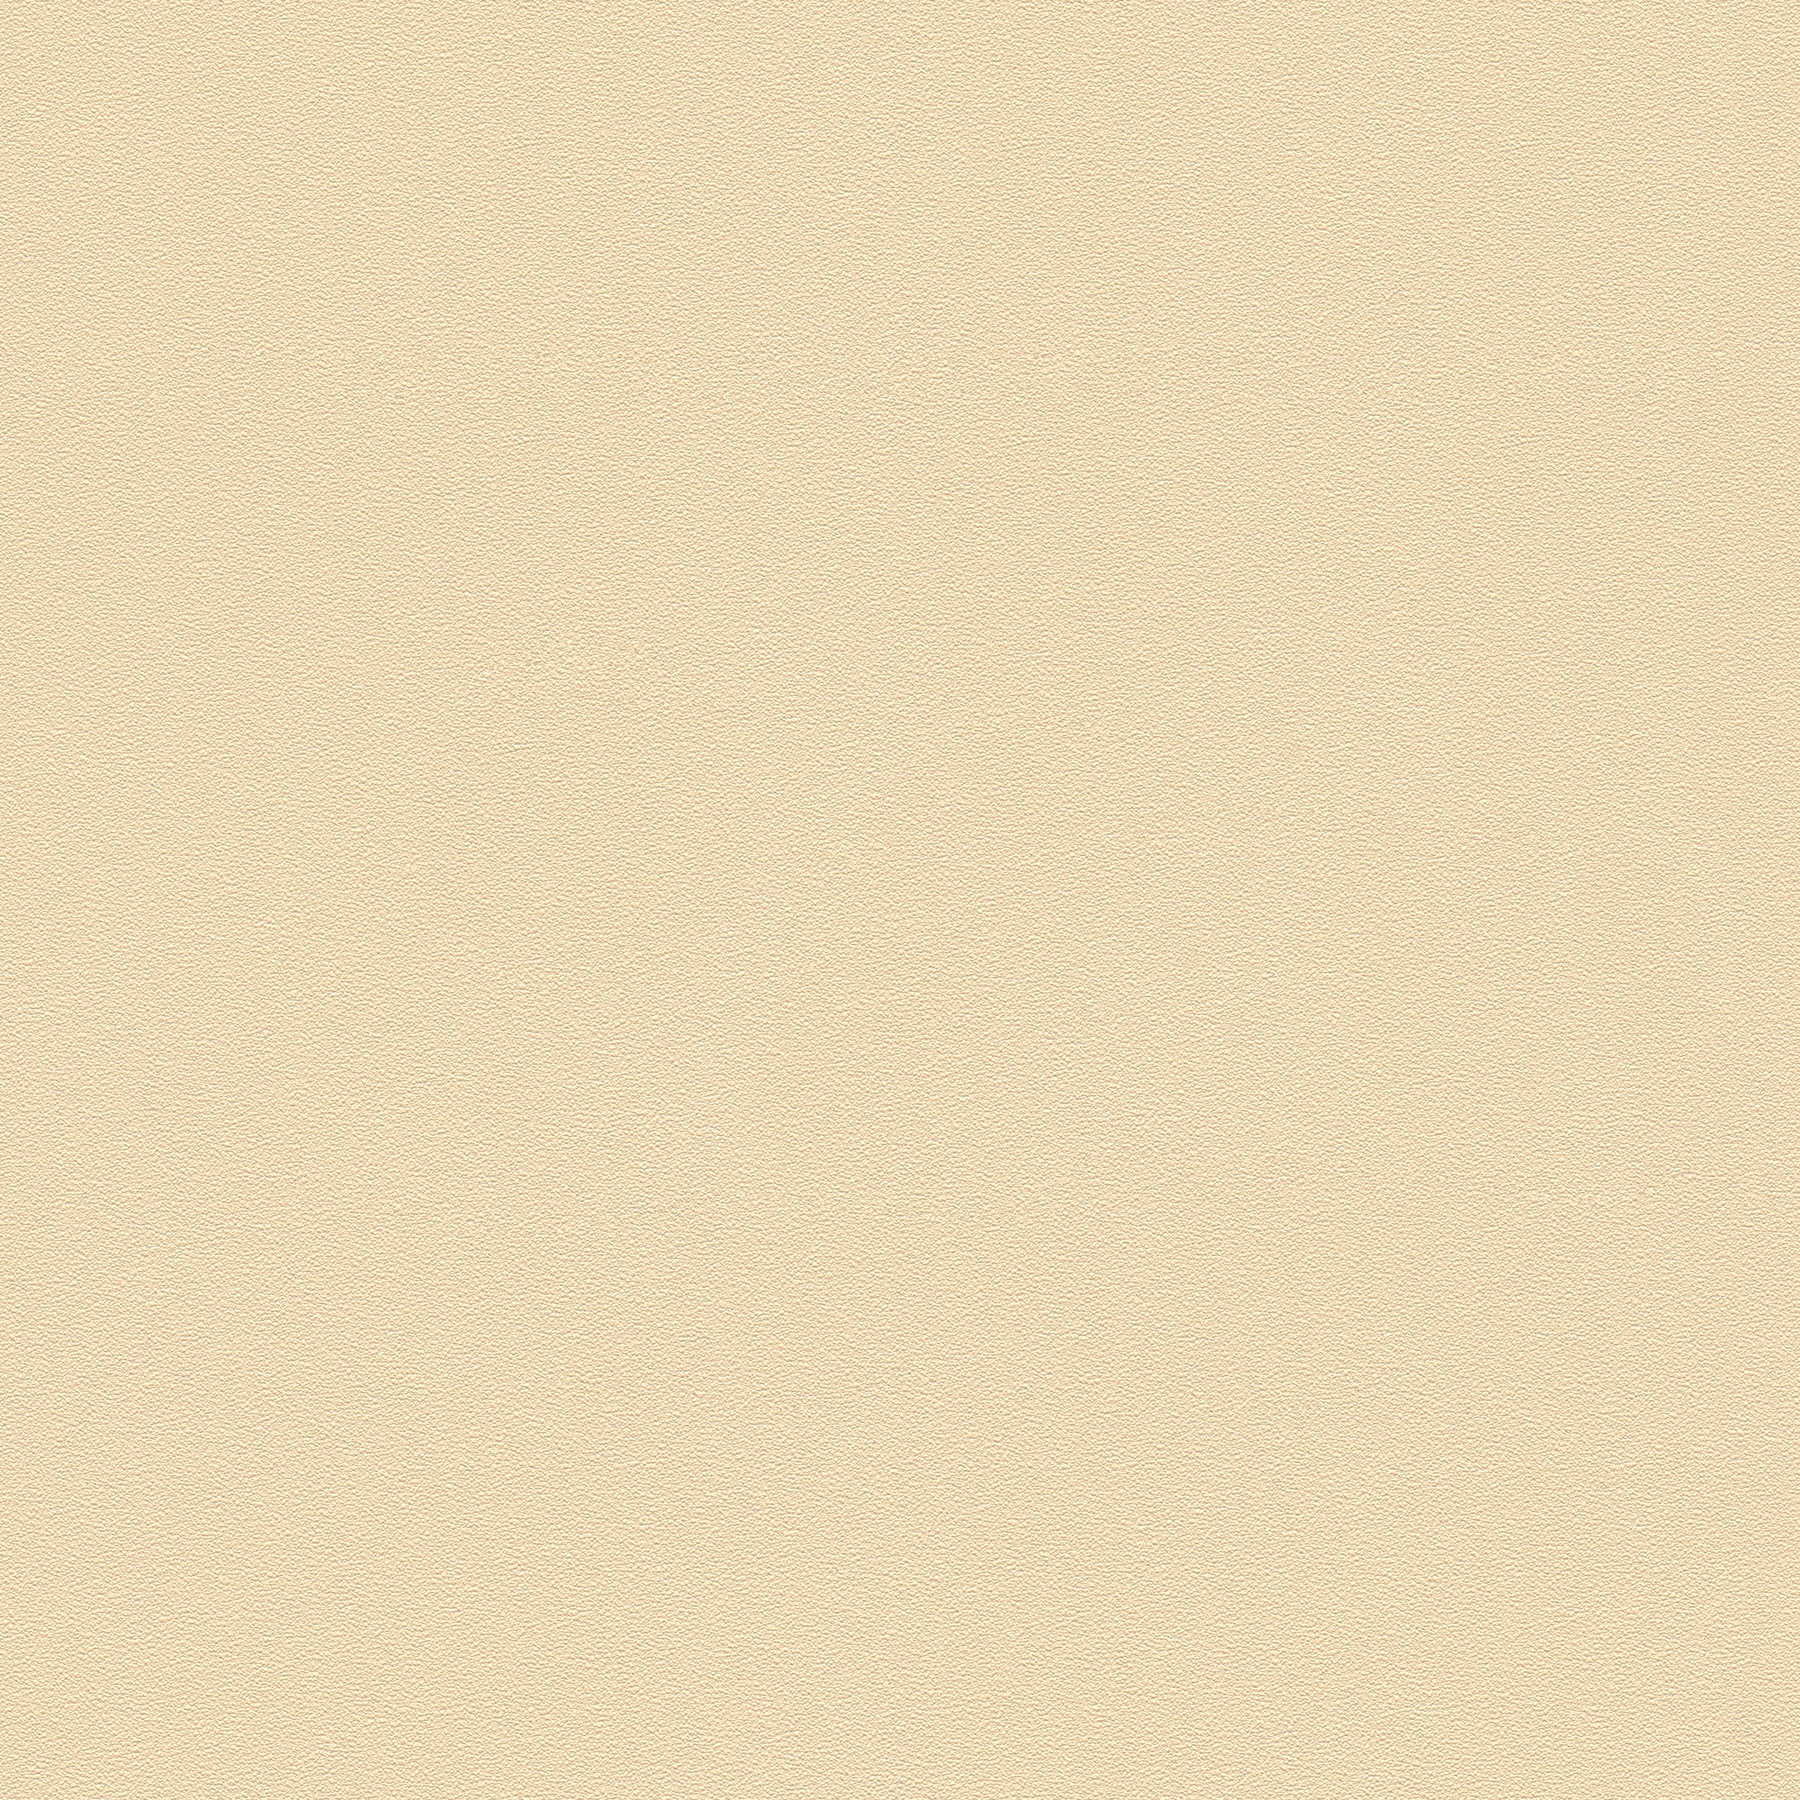 VERSACE wallpaper plain, silk matt with structure design - beige
